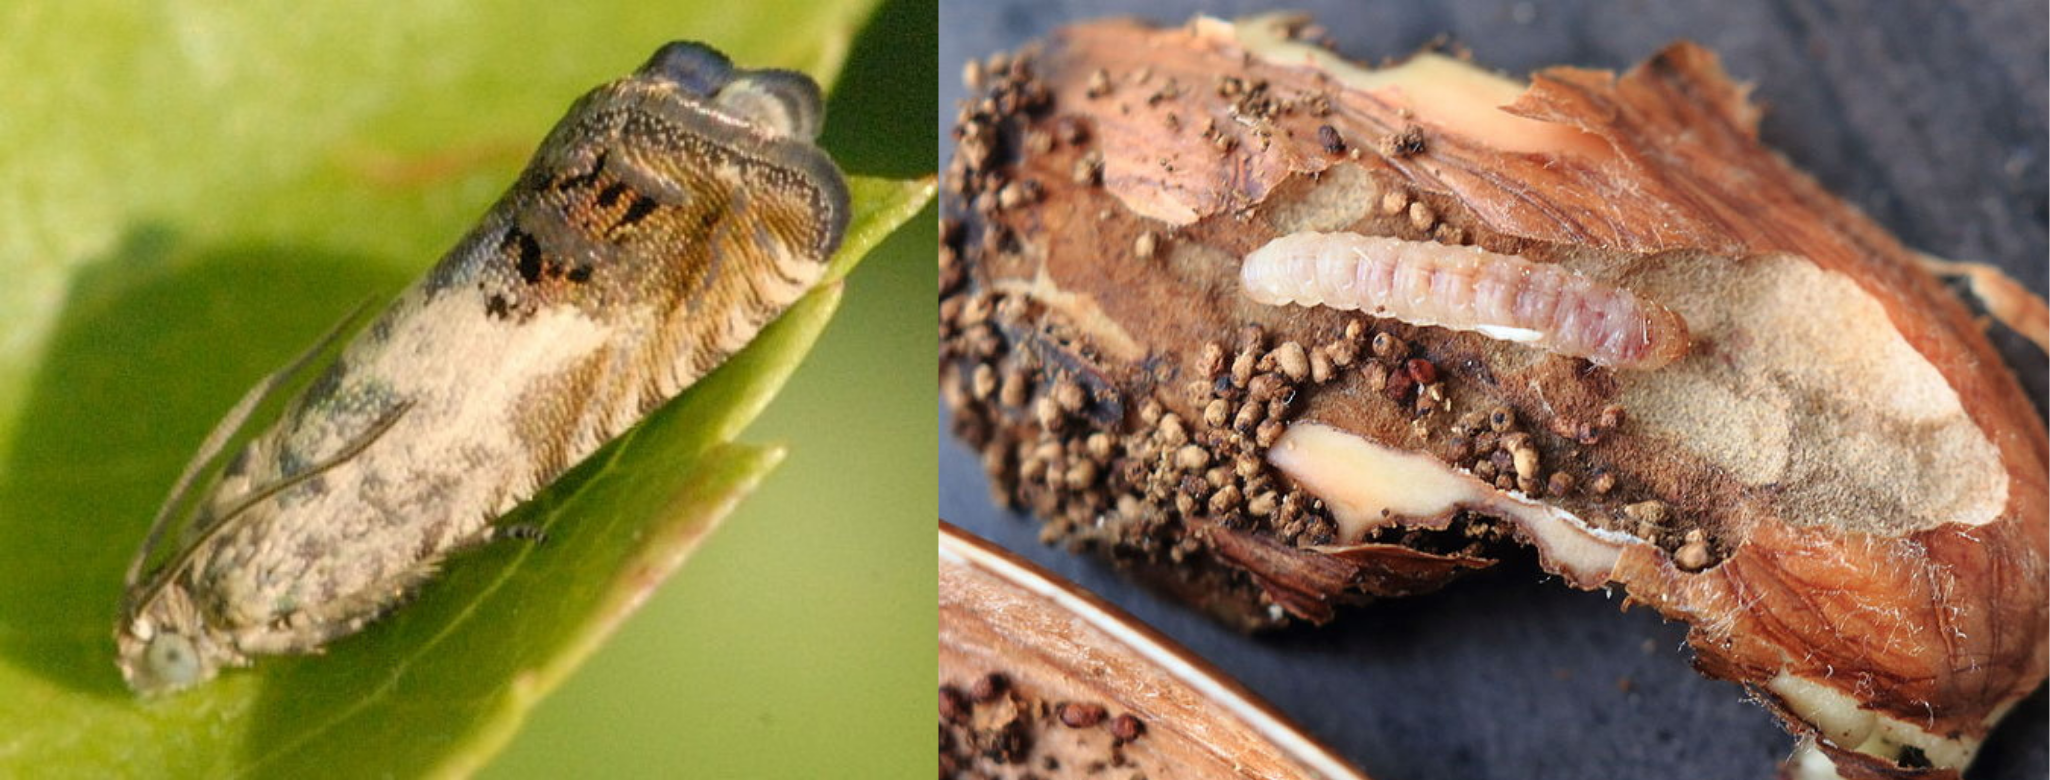 Adulto y larva de Cydia splendana, en este caso alimentándose de una bellota